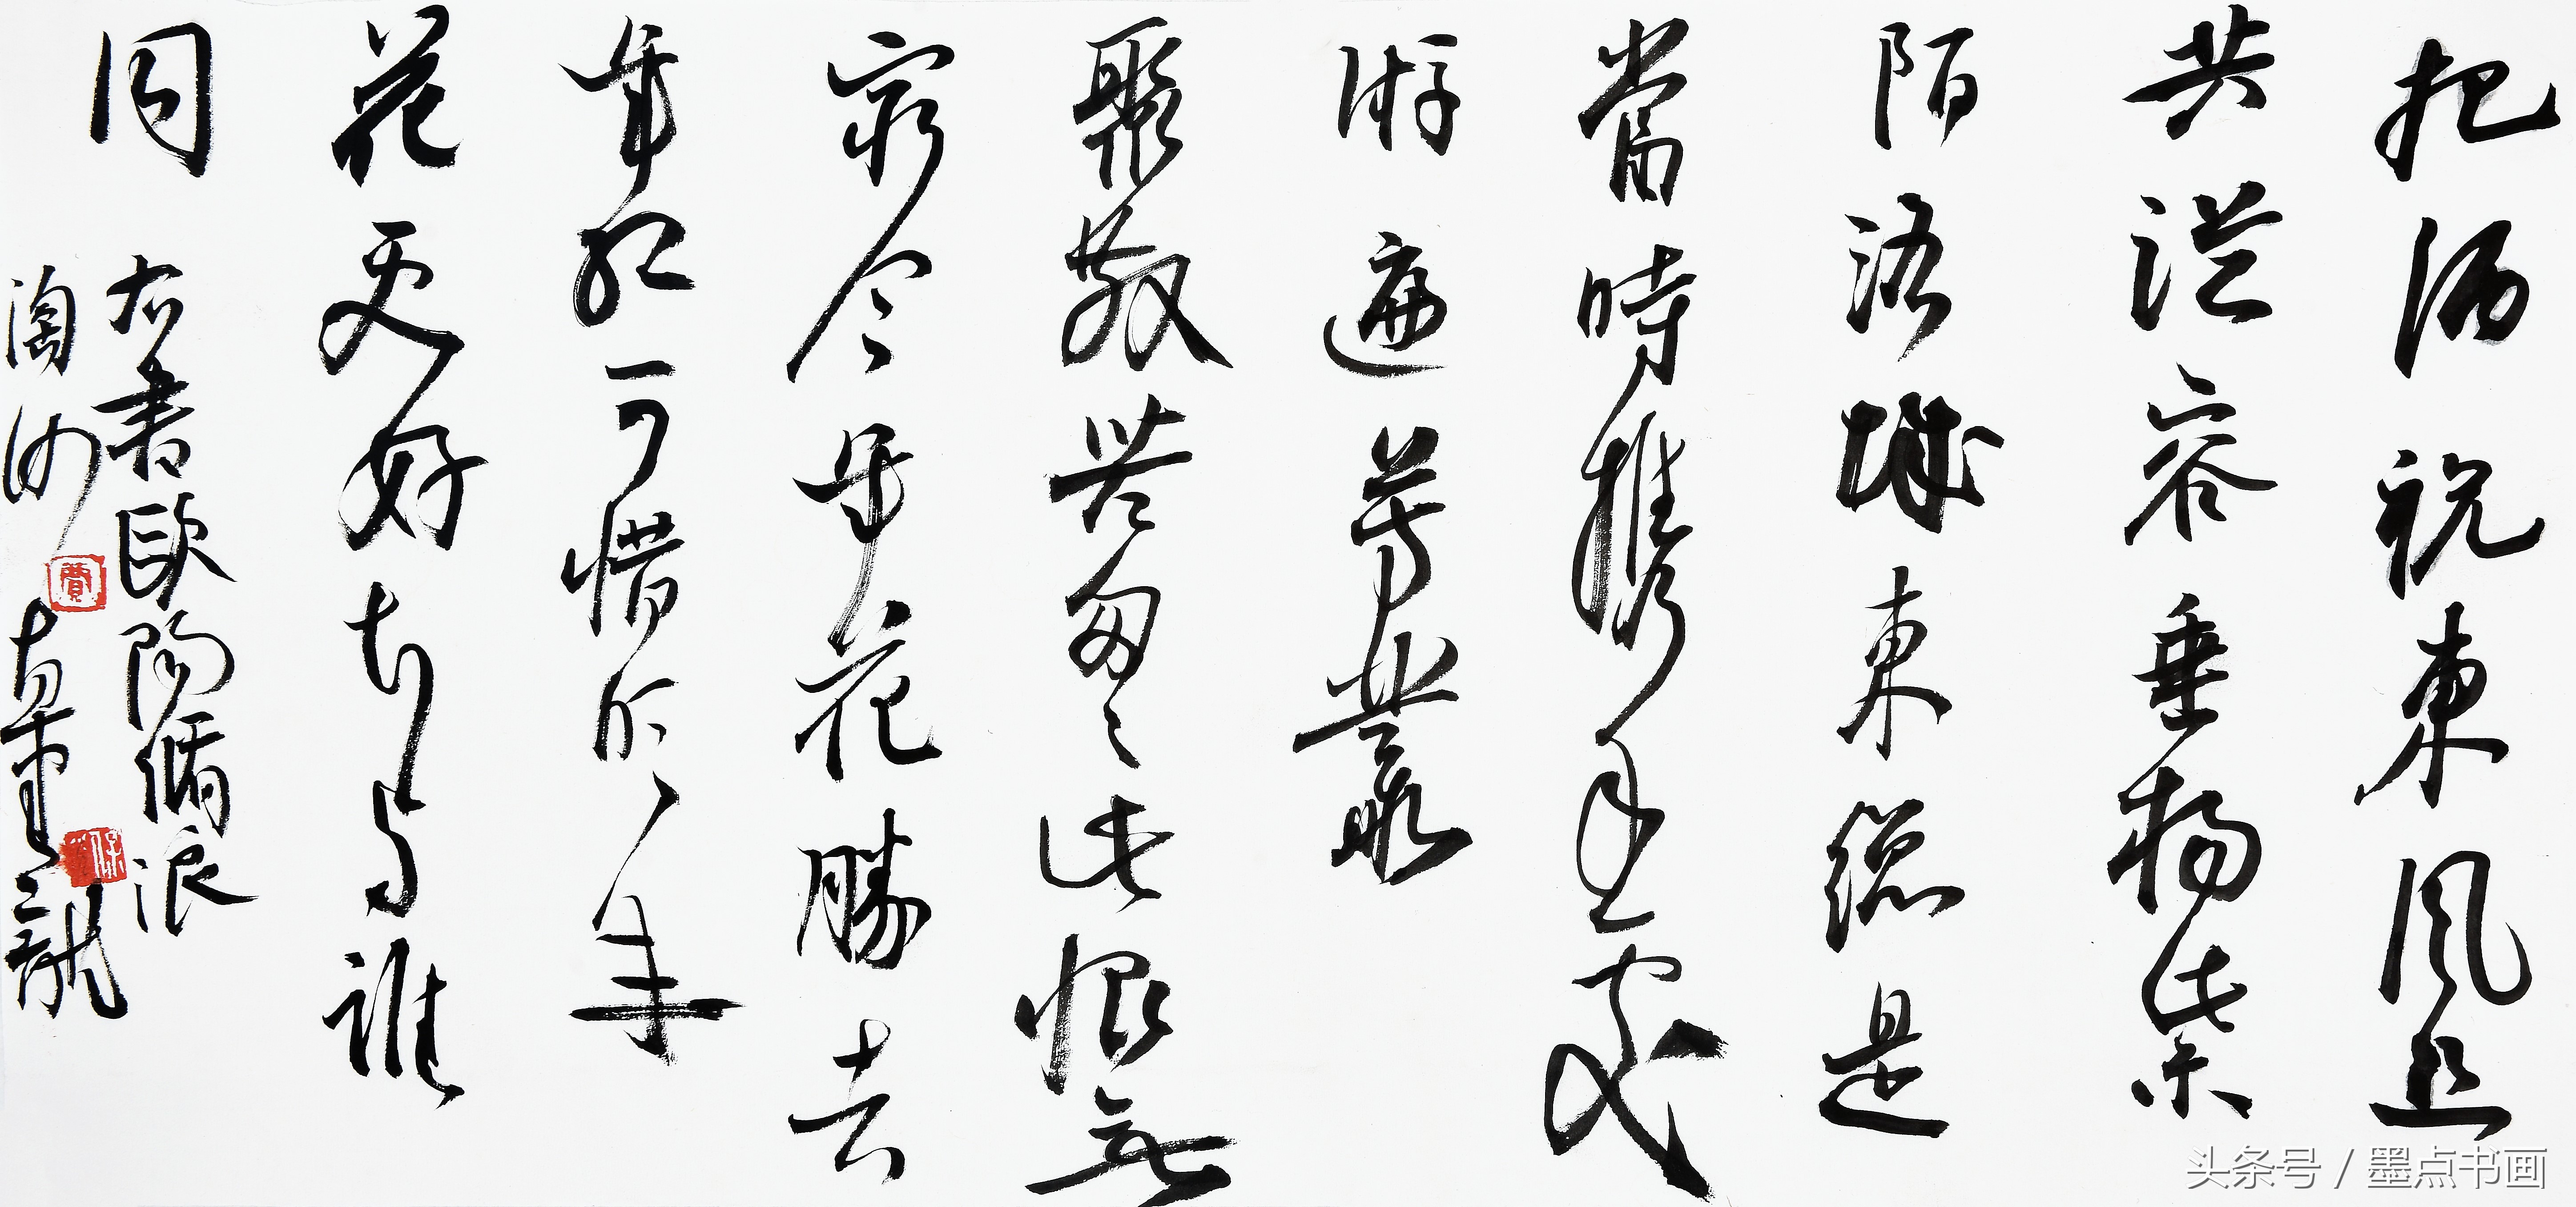 宋代人的词比唐代人的诗更加细腻，贾保荣行草书欧阳修《浪淘沙》